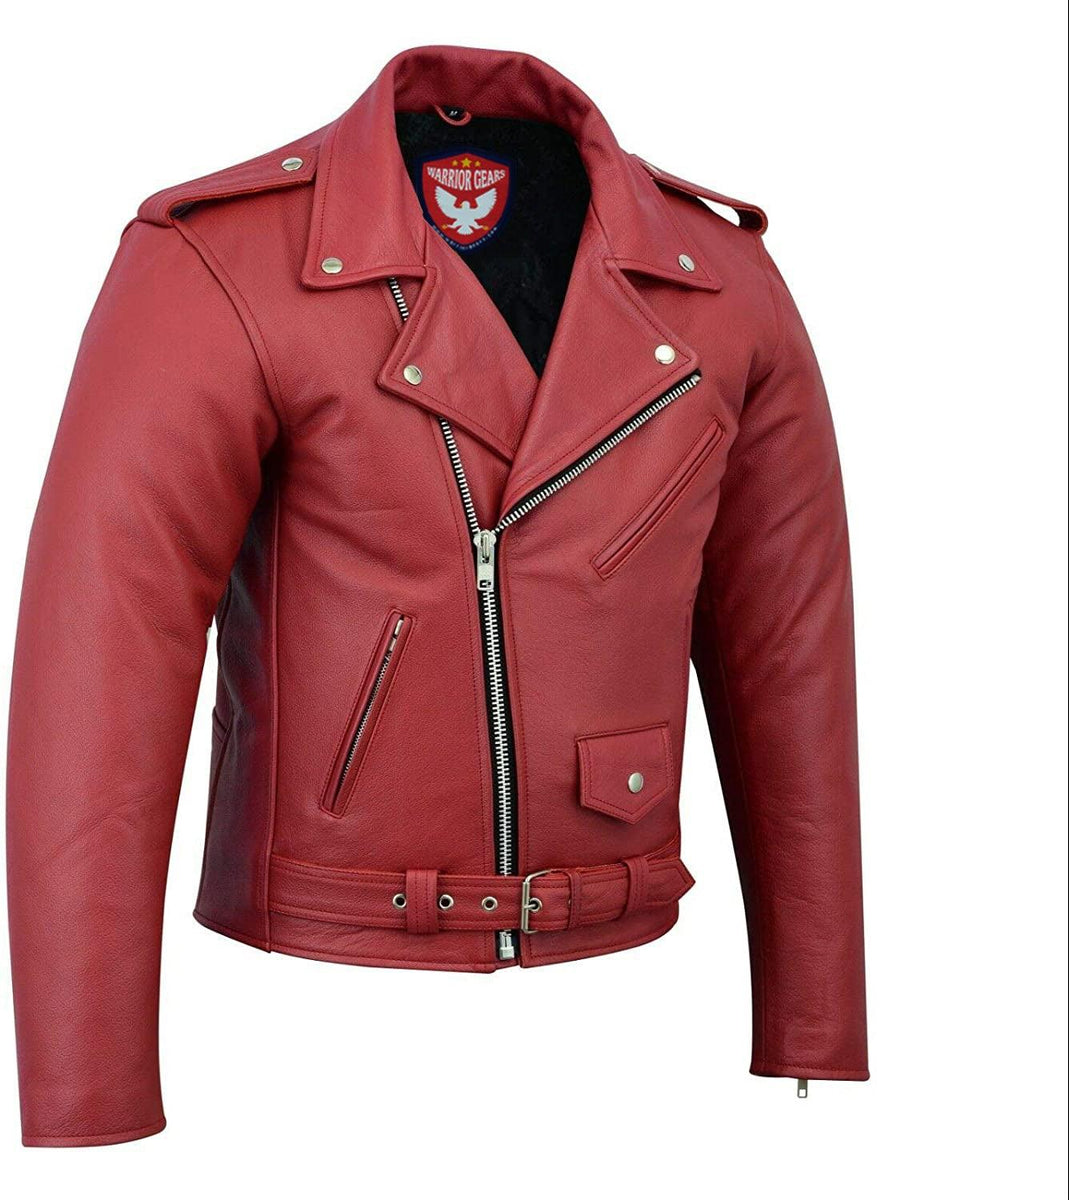 Warrior Gears® Perfecto Marlo Brando Leather Motorcycle Jacket for Men